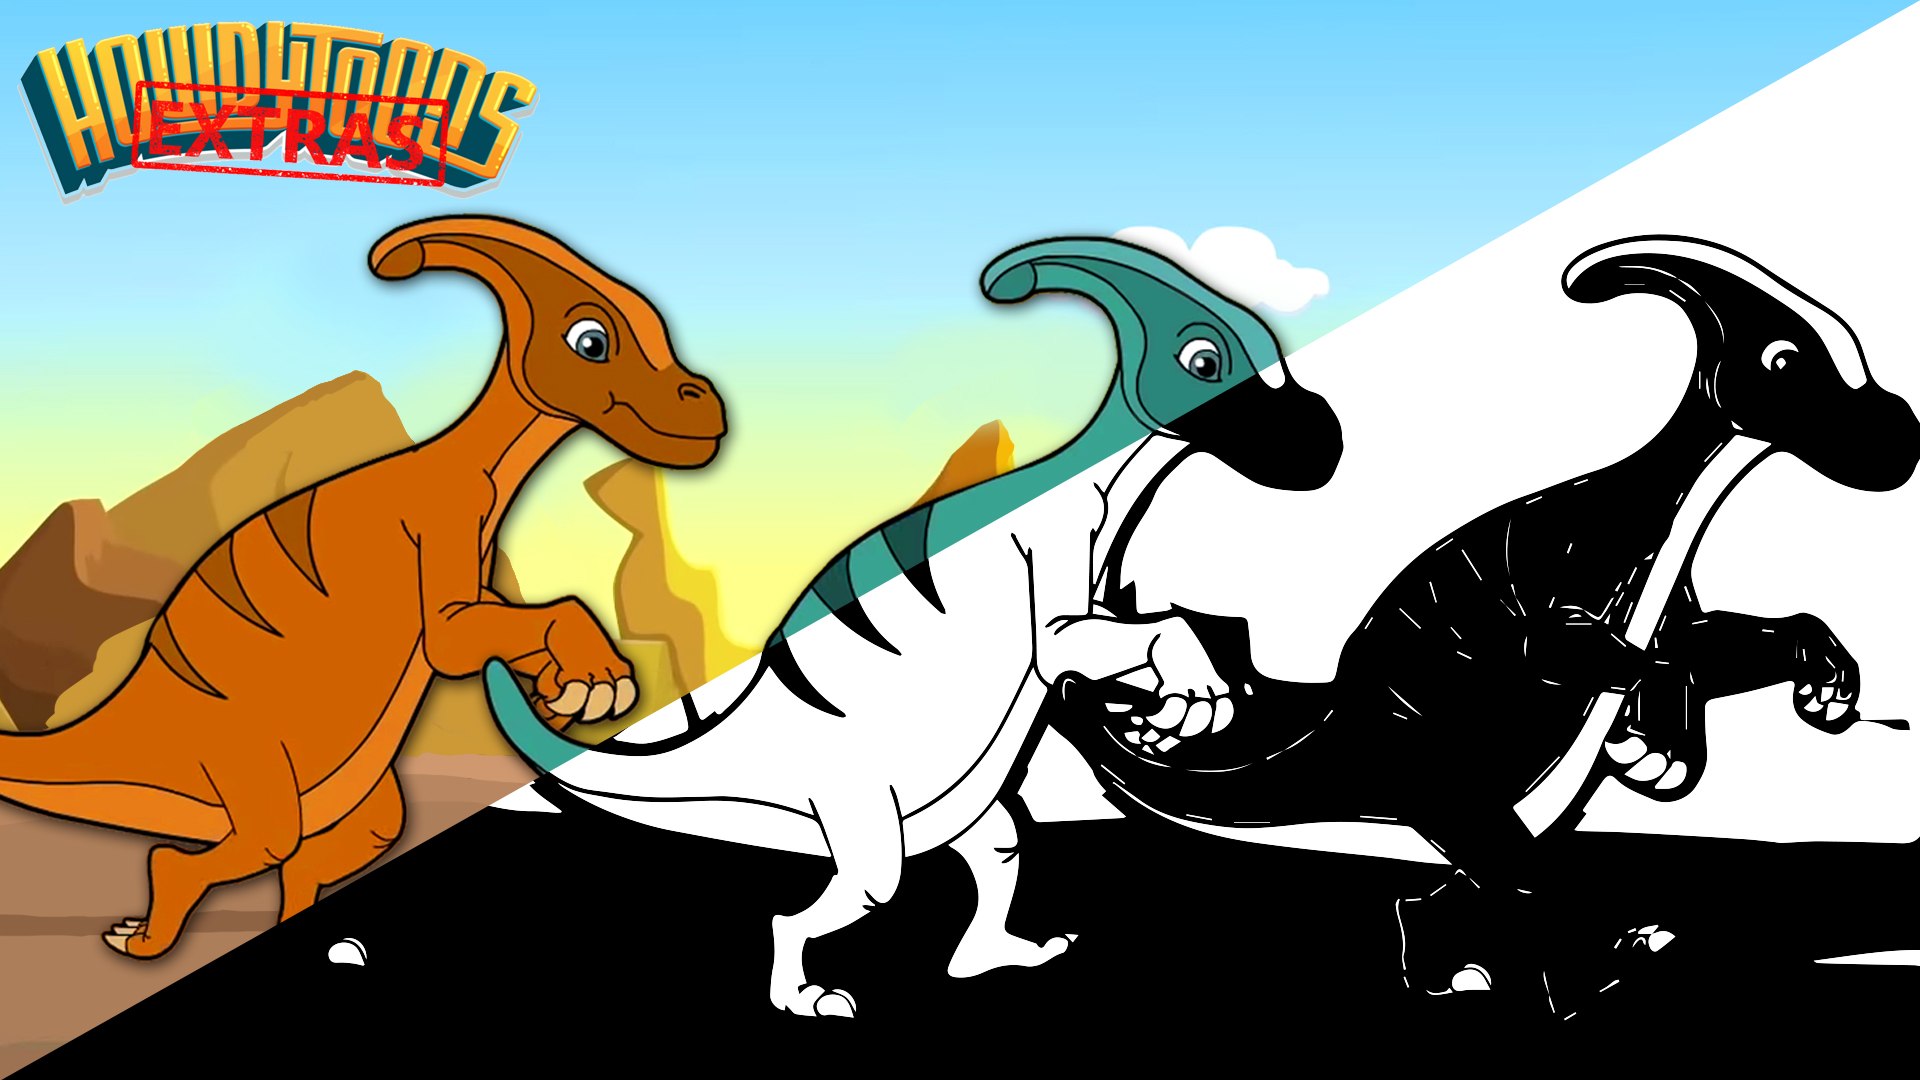 SPINOSAURUS SONG - Dinosaur Battles - Spinosaurus vs T-Rex - Dinosaur Songs  by Howdytoons 